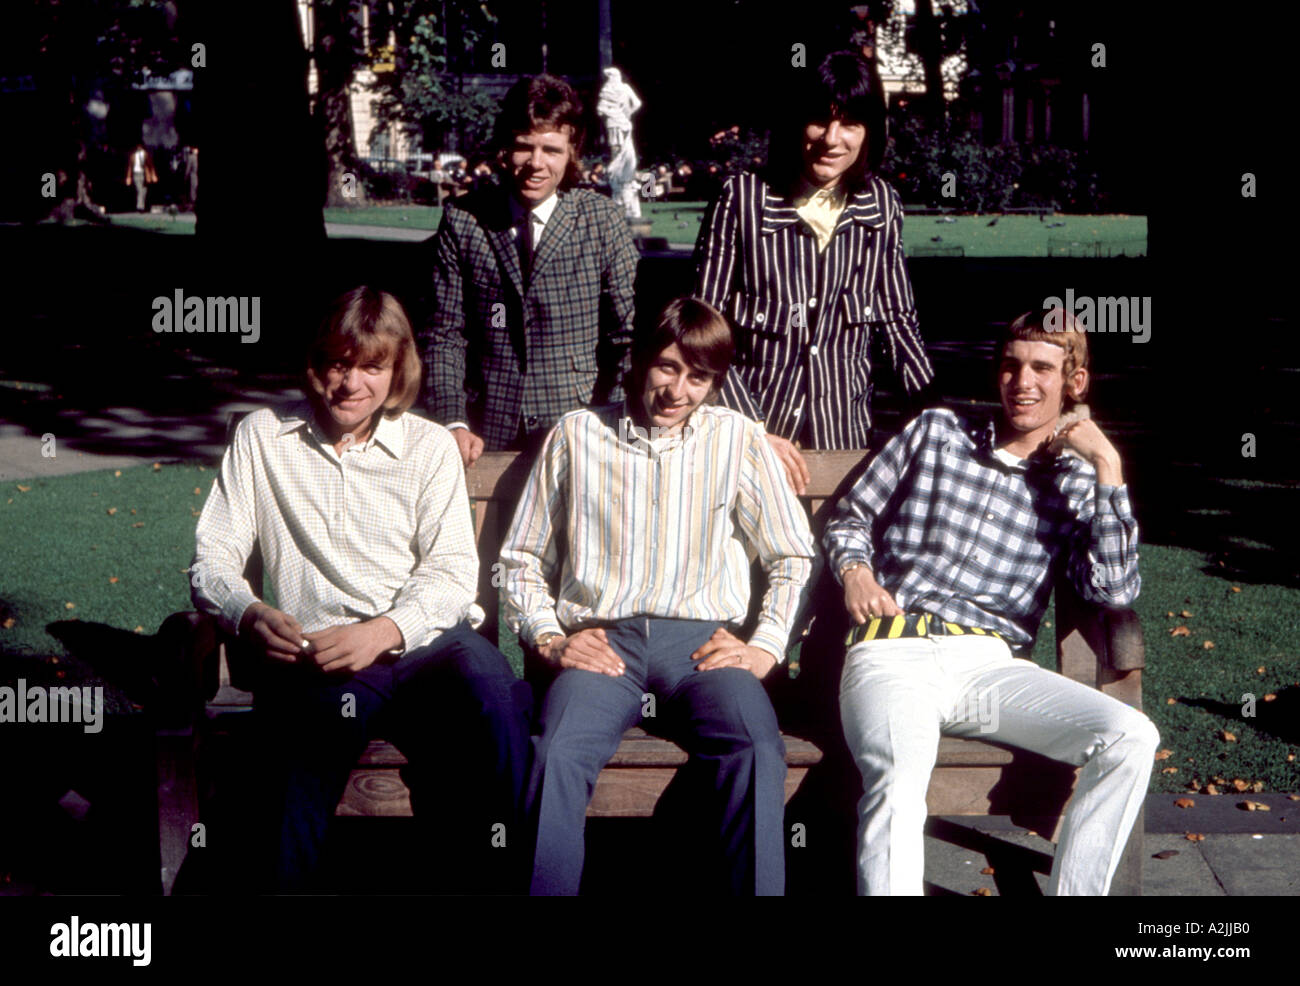 Groupe pop britannique les oiseaux des années 70 Banque D'Images